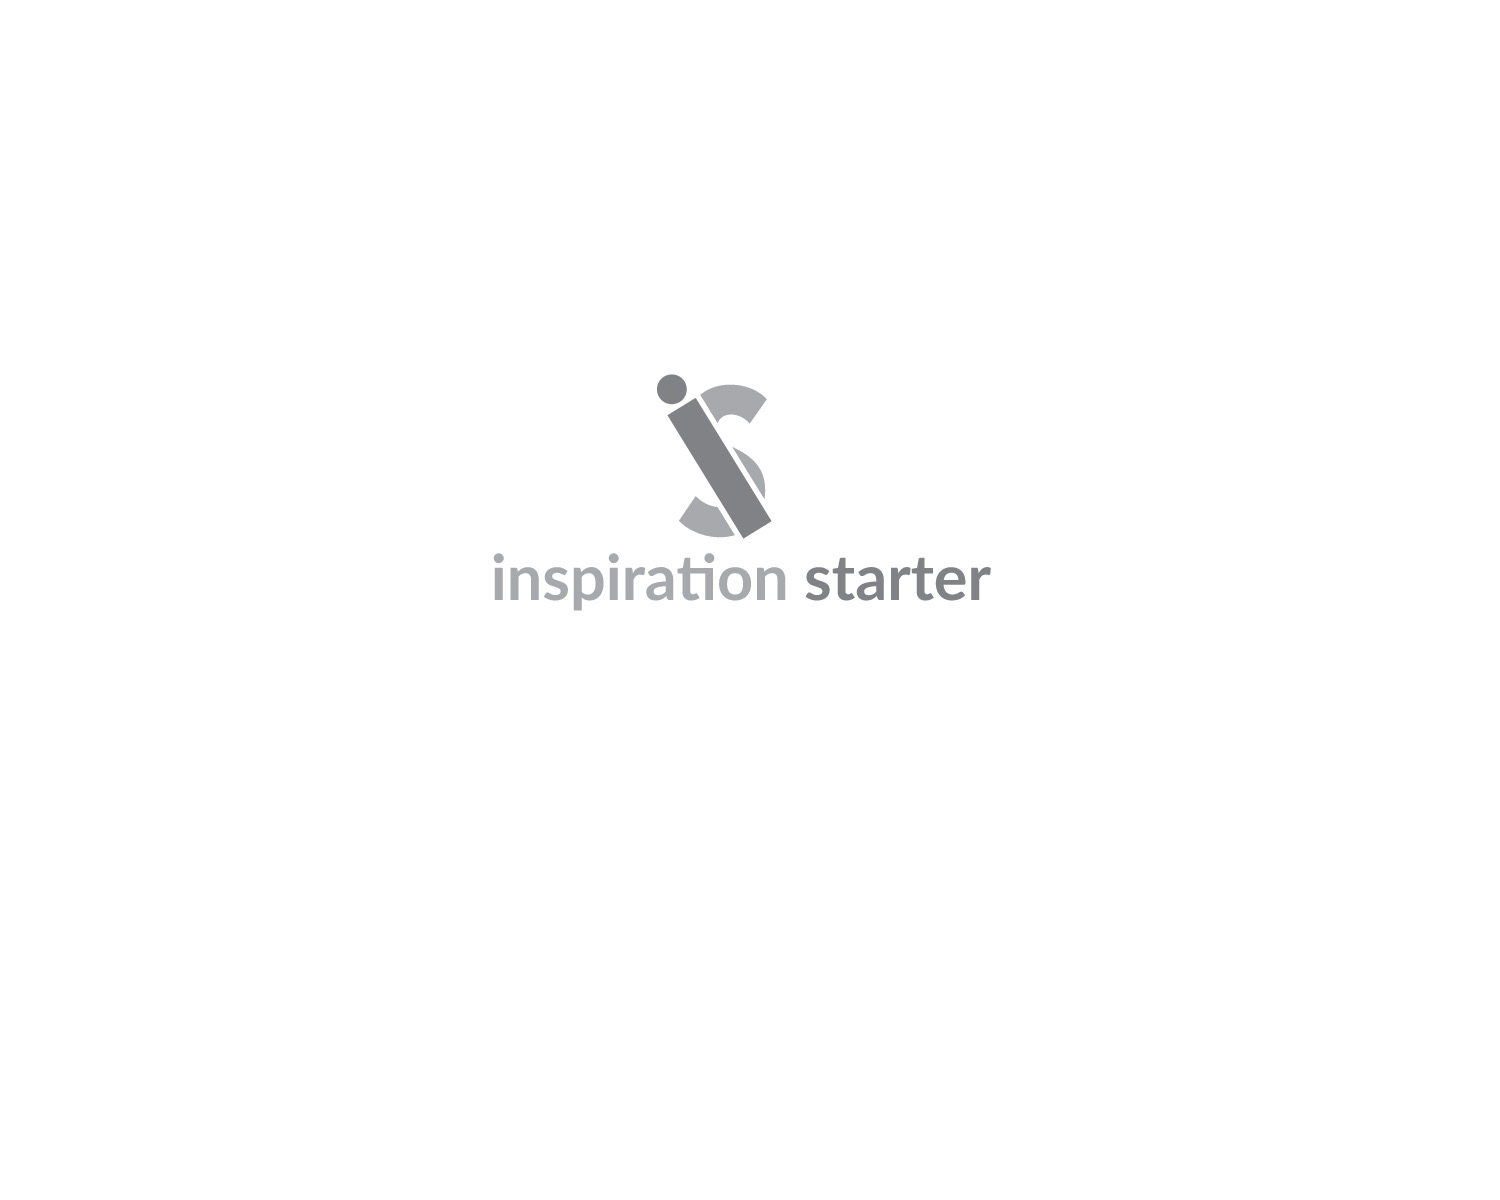 inspirationstarter Logo